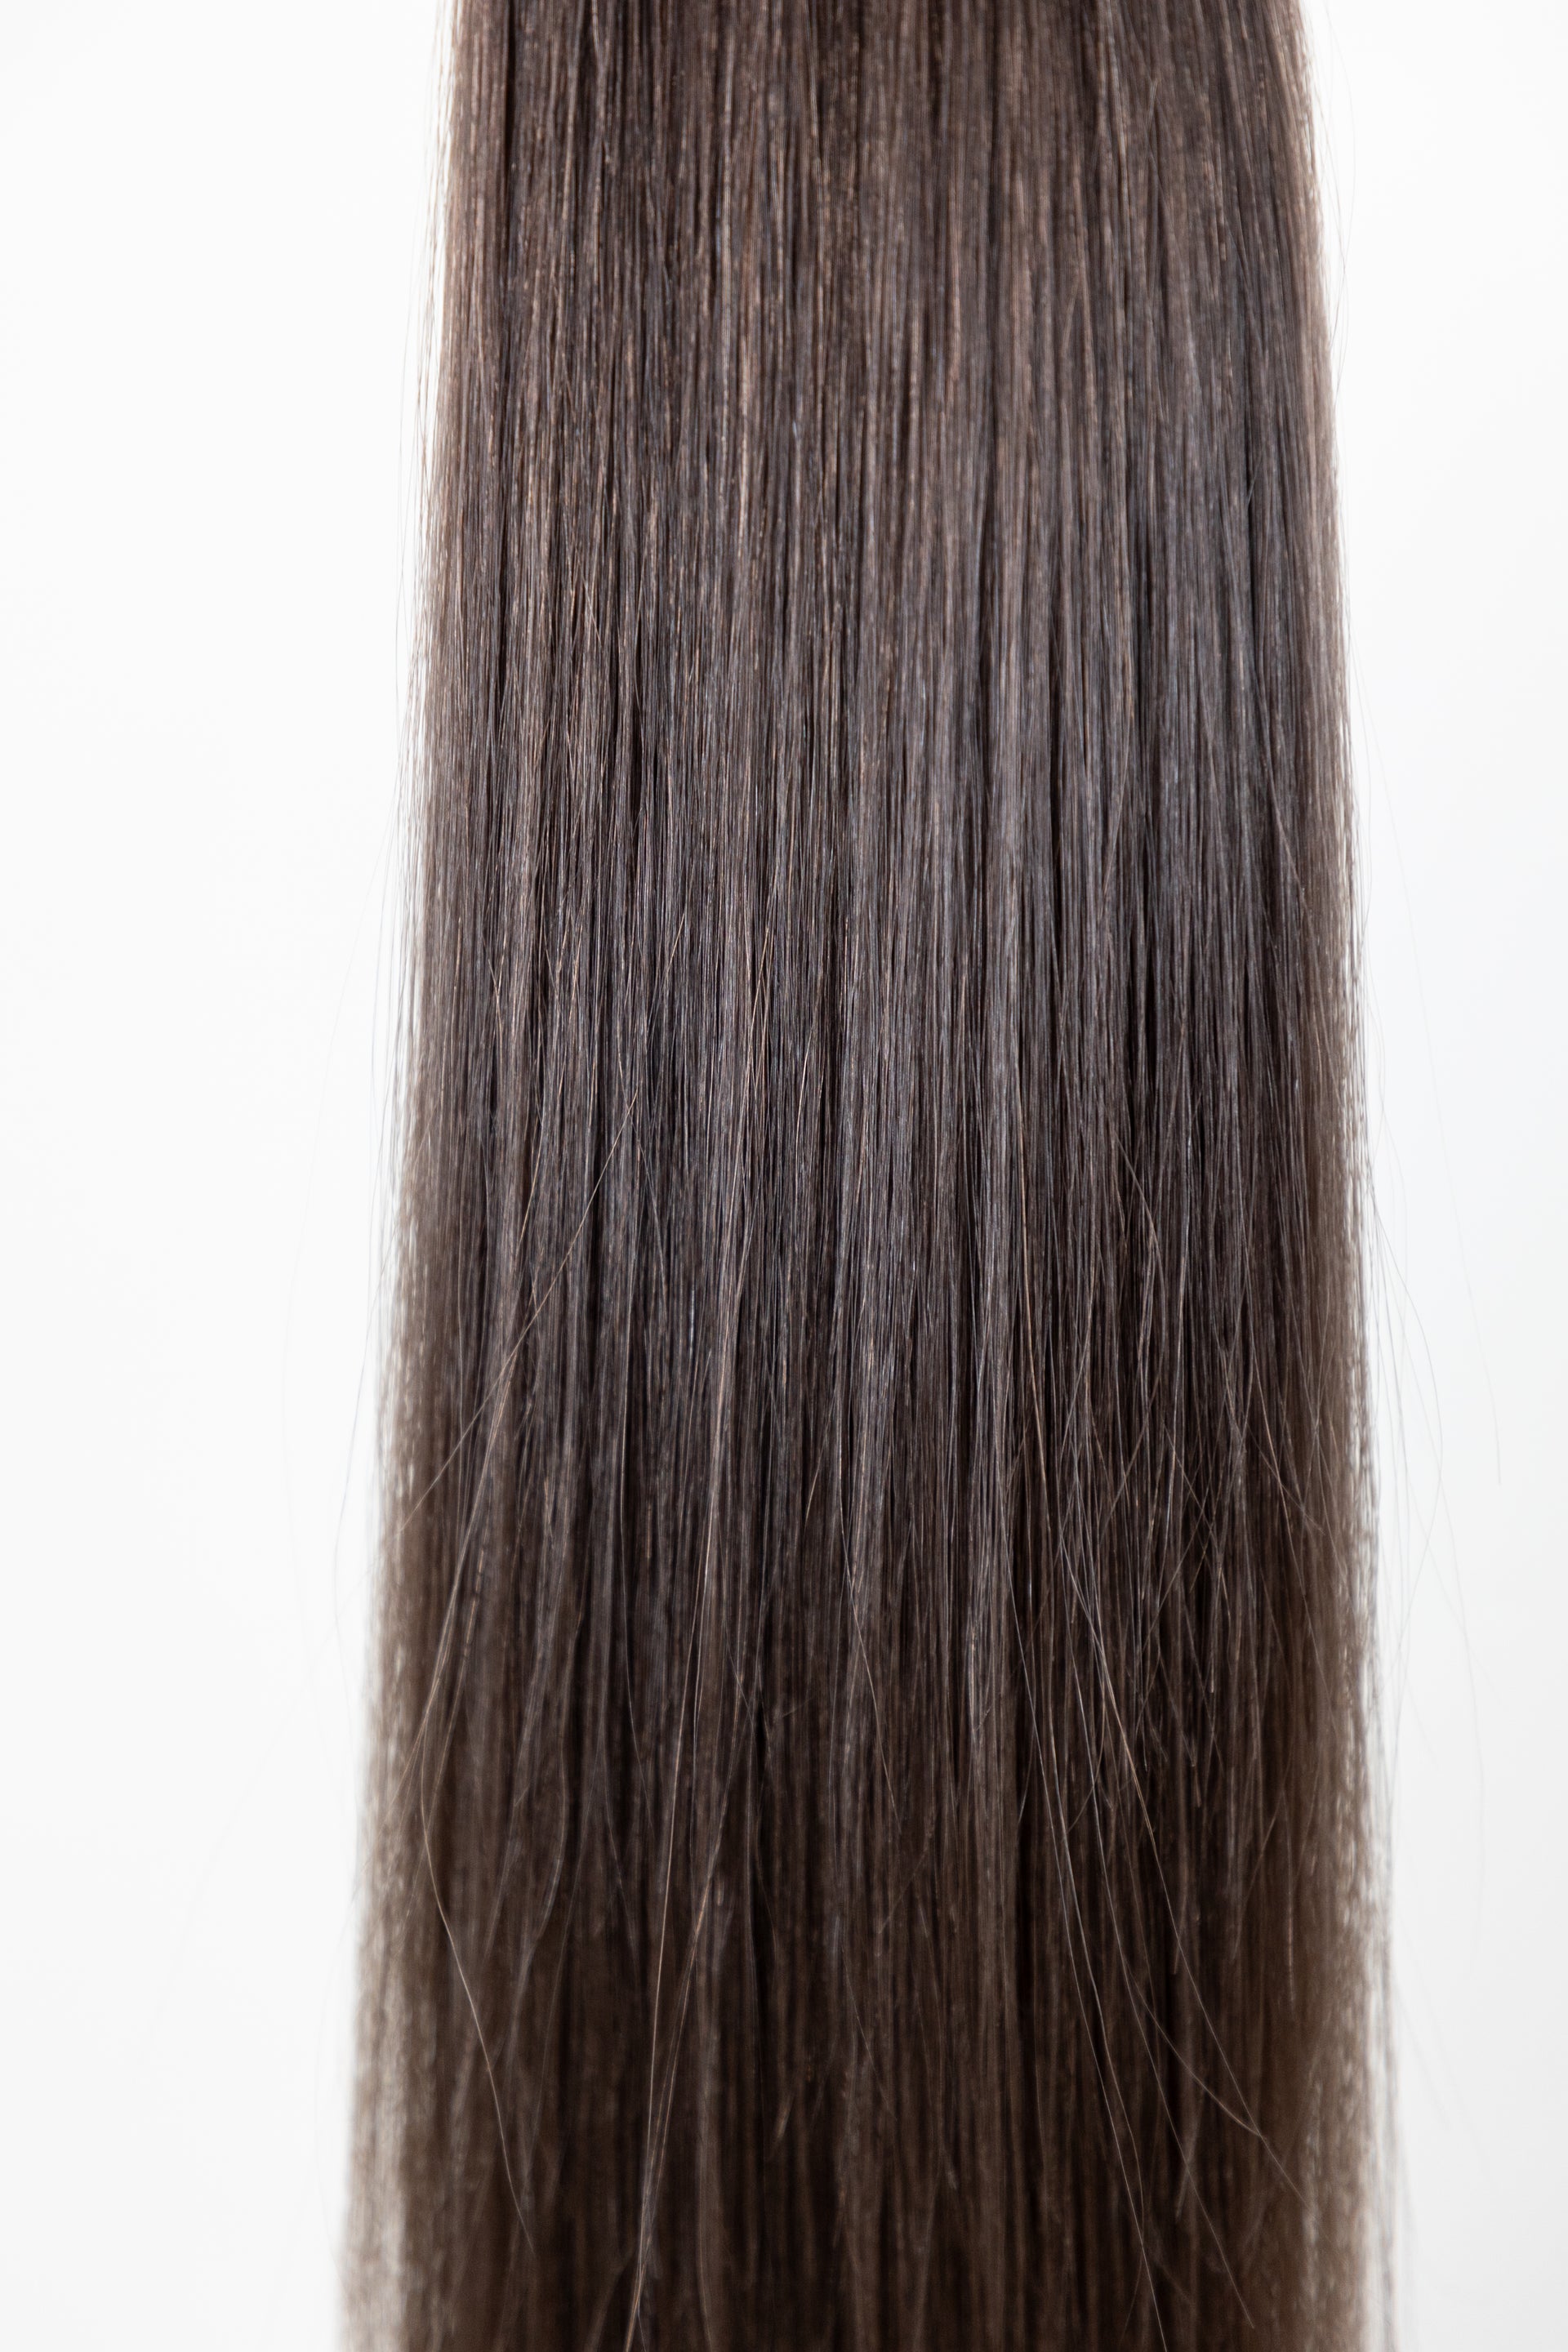 BLACK #3 European Virgin Remy Human Hair, Bulk